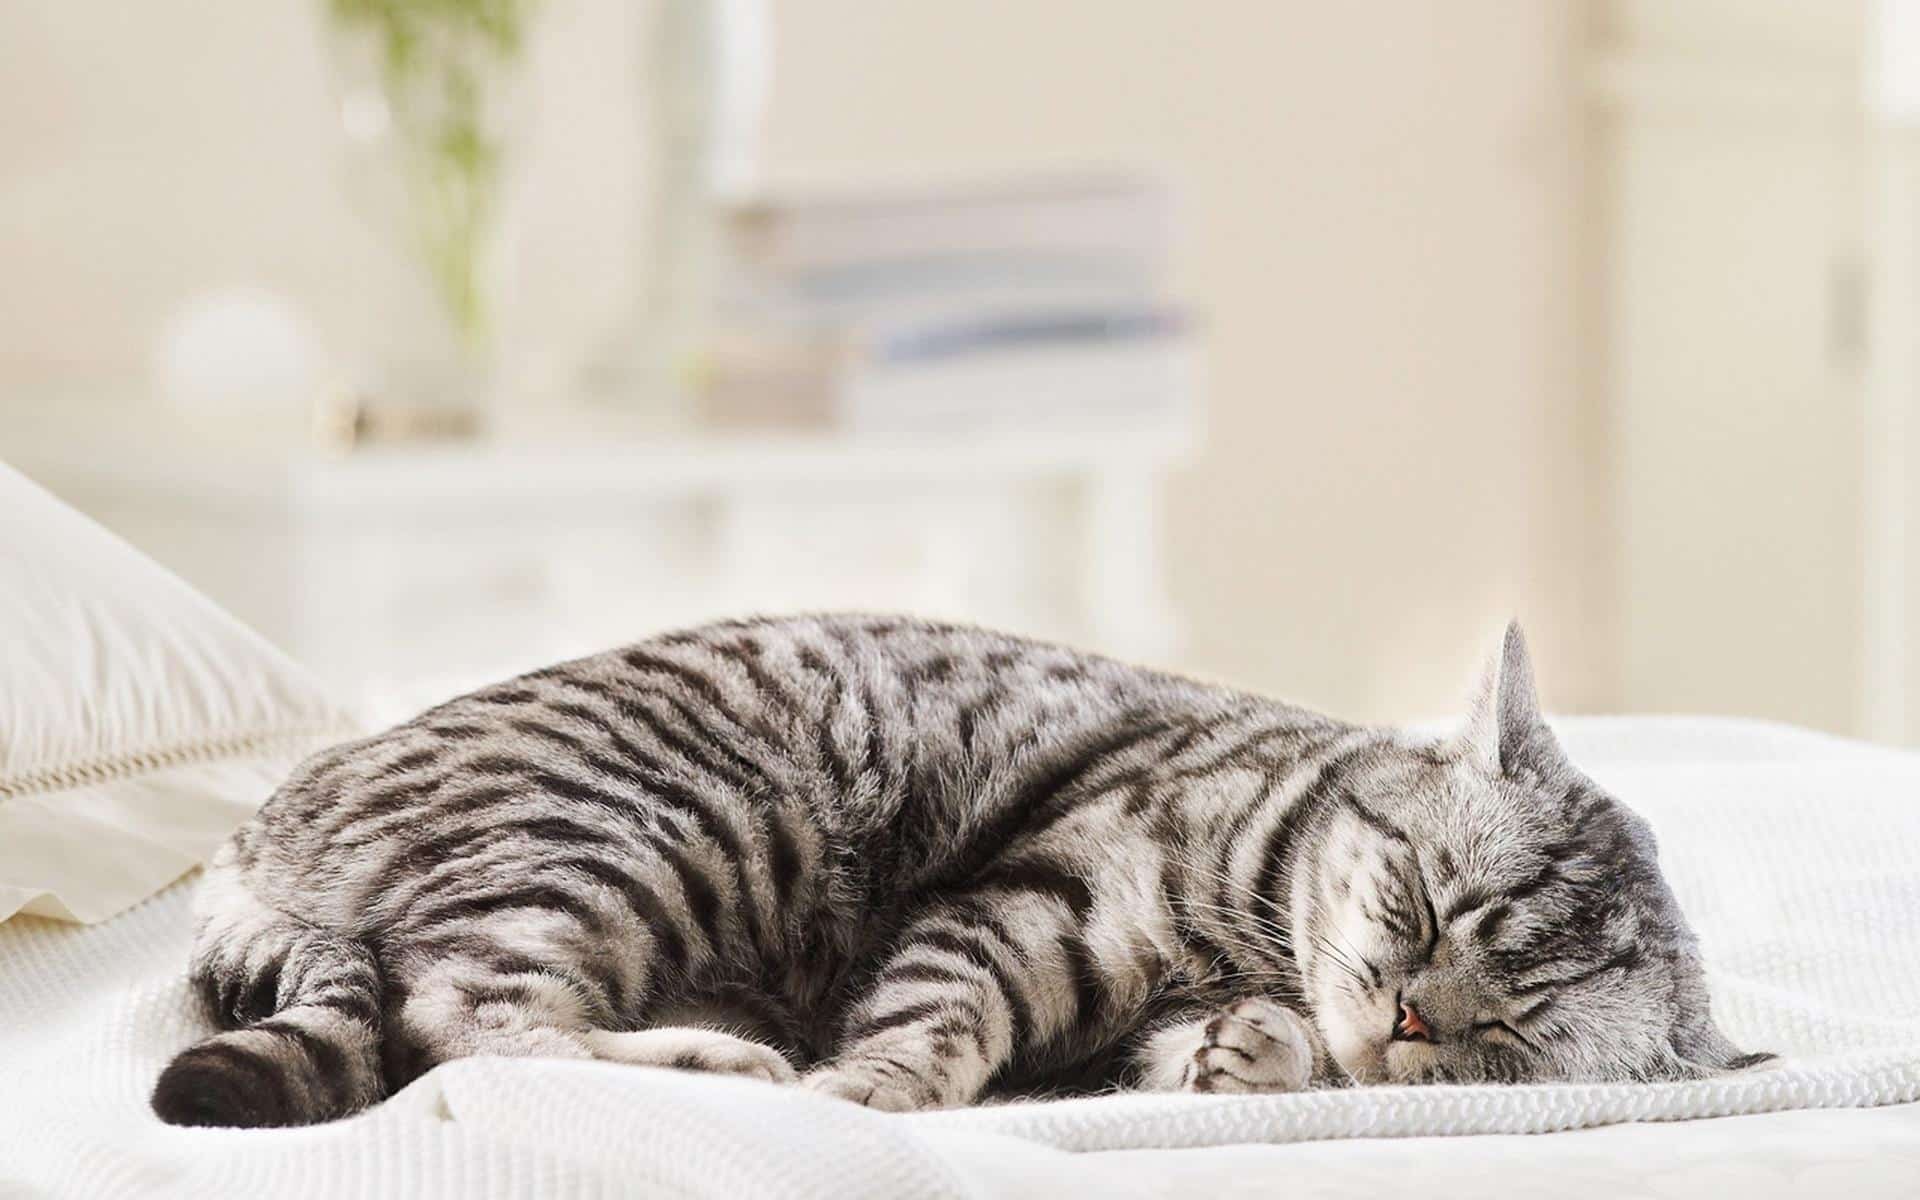 Thời gian ngủ của mèo sẽ thay đổi tùy thuộc vào tuổi tác, sức khỏe, tâm trạng và các yếu tố khác.